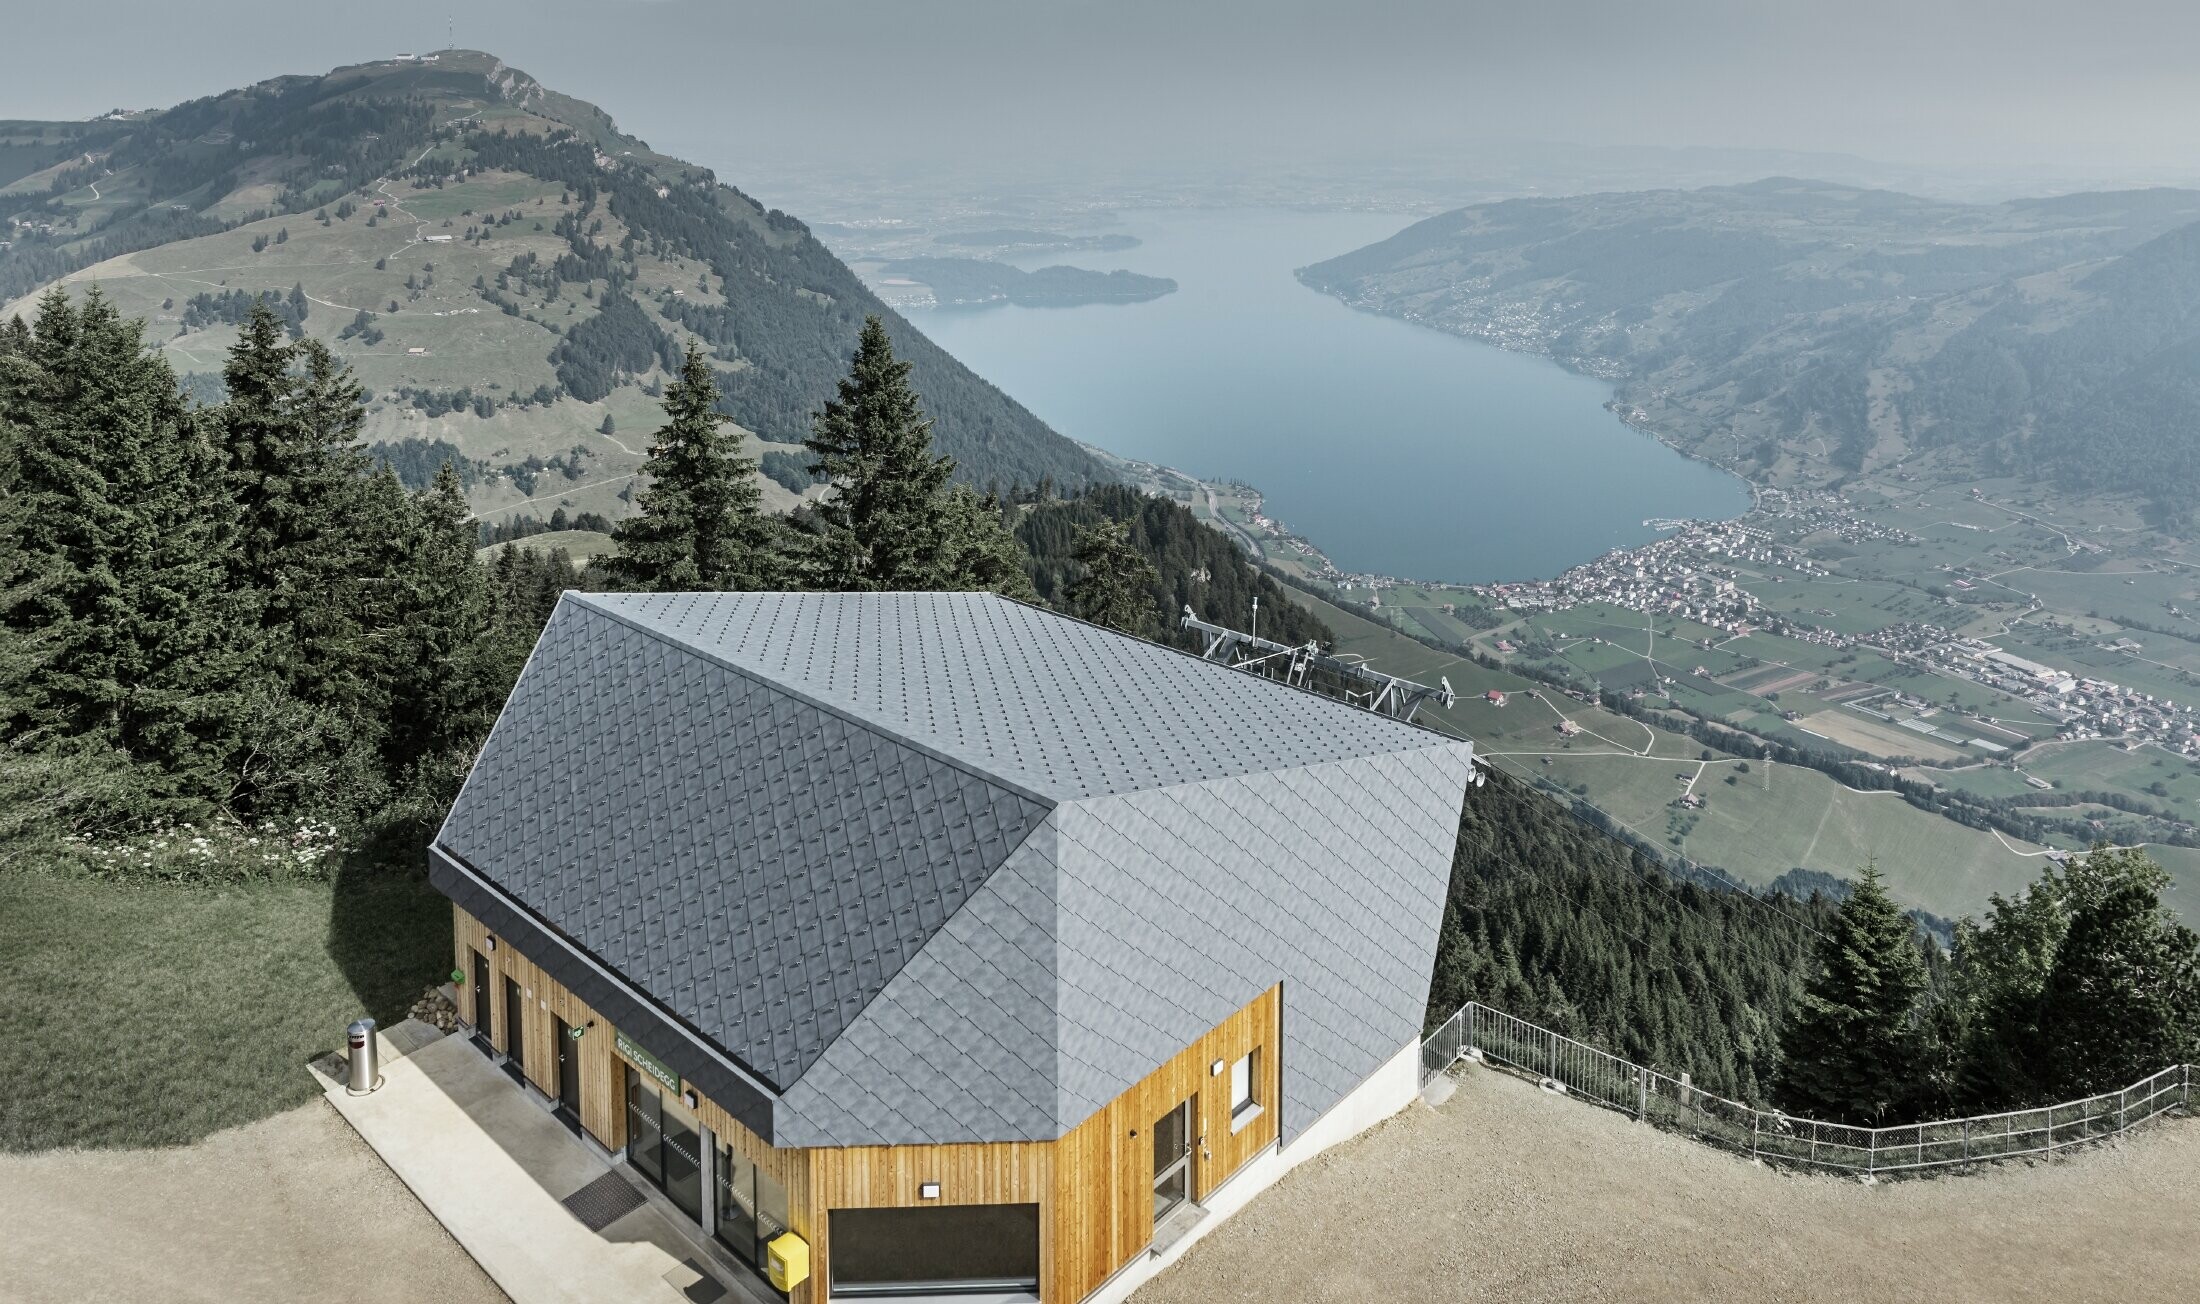 Luchtopname van het bergstation Rigi Scheidegg kabelbaan, bekleed met de PREFA gevellosange 44x44 in P.10 steengrijs en hout.